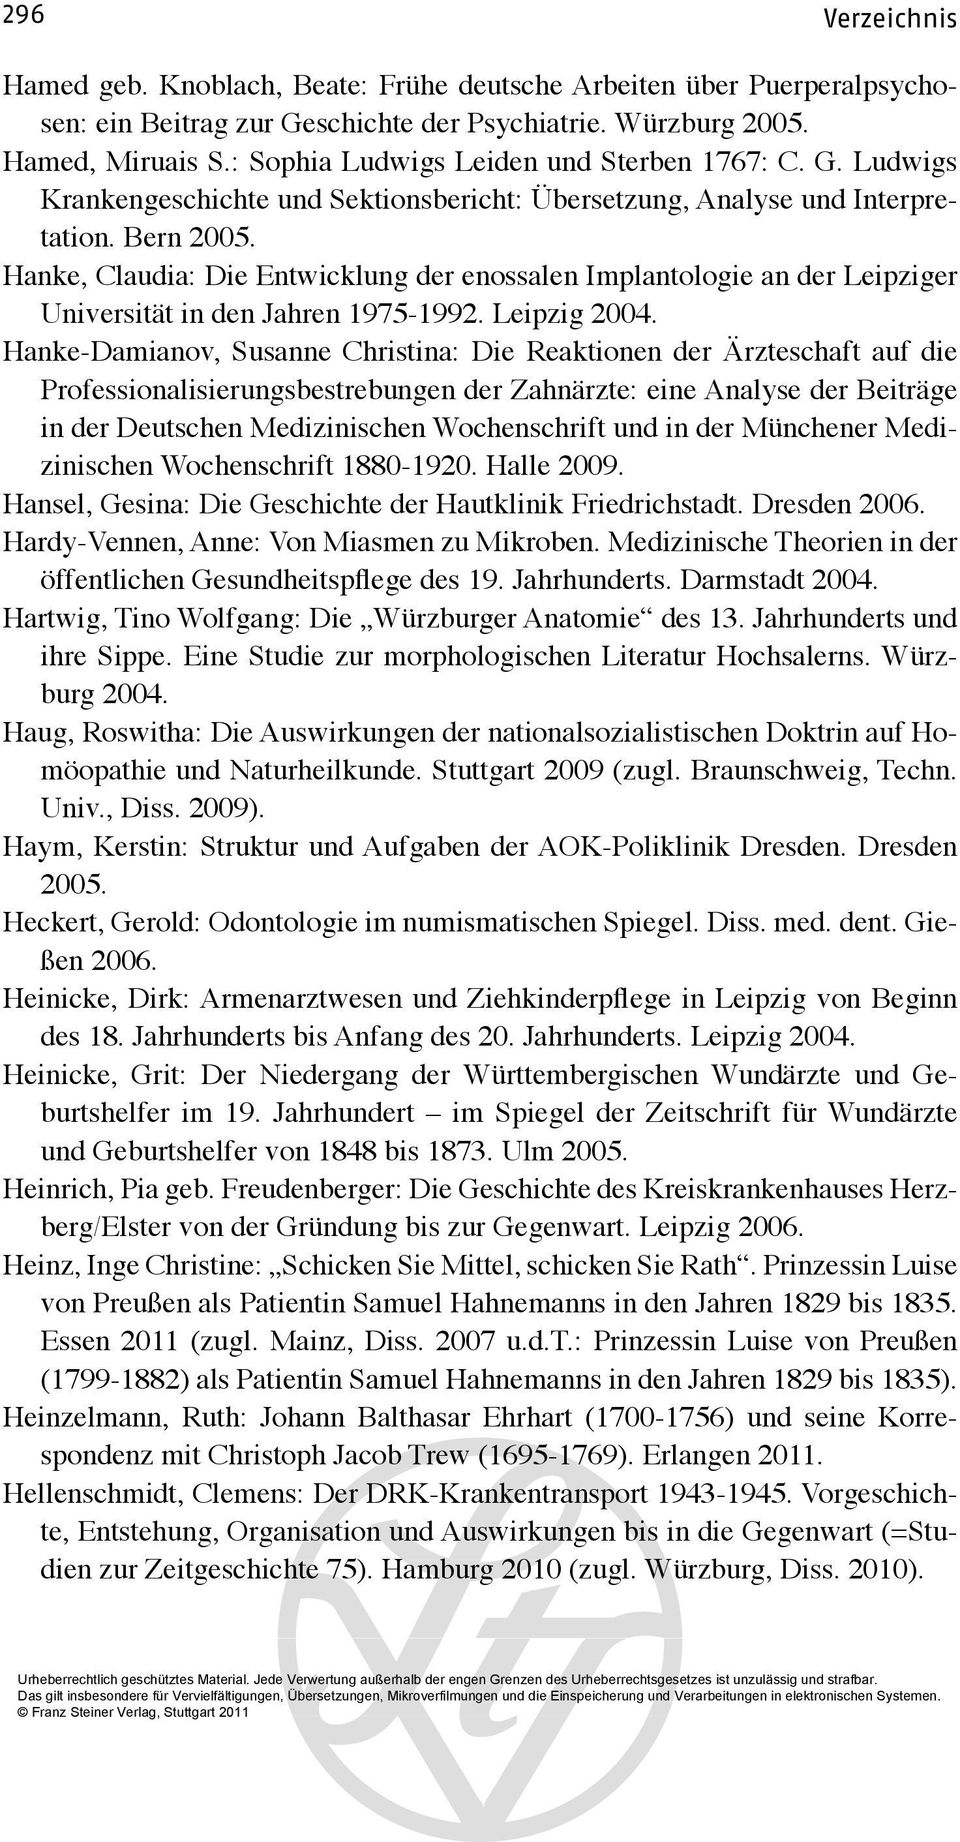 Hanke, Claudia: Die Entwicklung der enossalen Implantologie an der Leipziger Universität in den Jahren 1975-1992. Leipzig 2004.